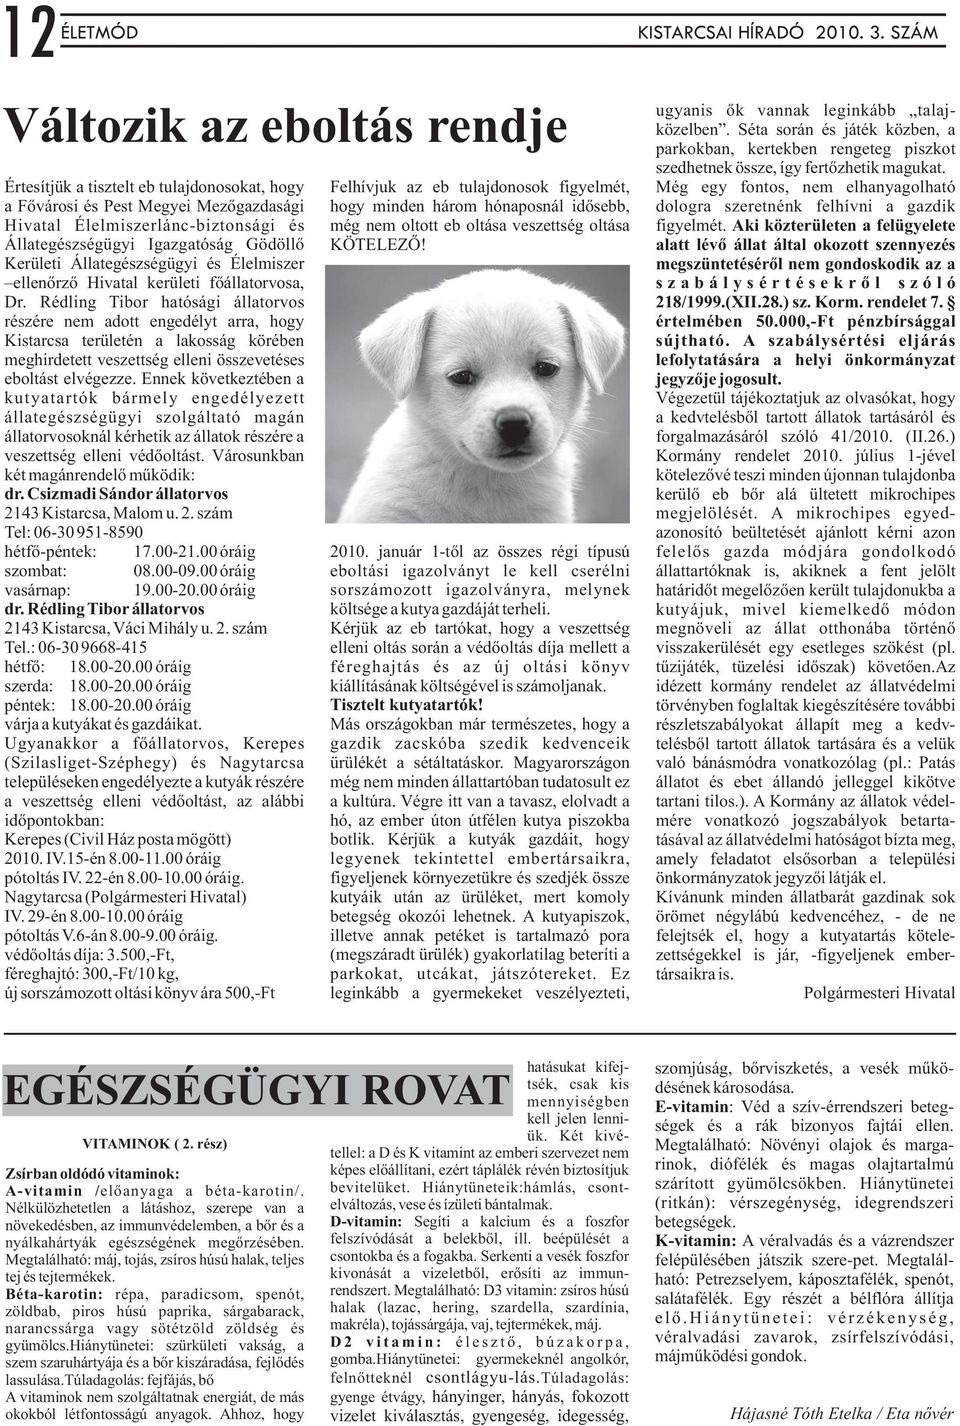 Rédling Tibor hatósági állatorvos részére nem adott engedélyt arra, hogy Kistarcsa területén a lakosság körében meghirdetett veszettség elleni összevetéses eboltást elvégezze.